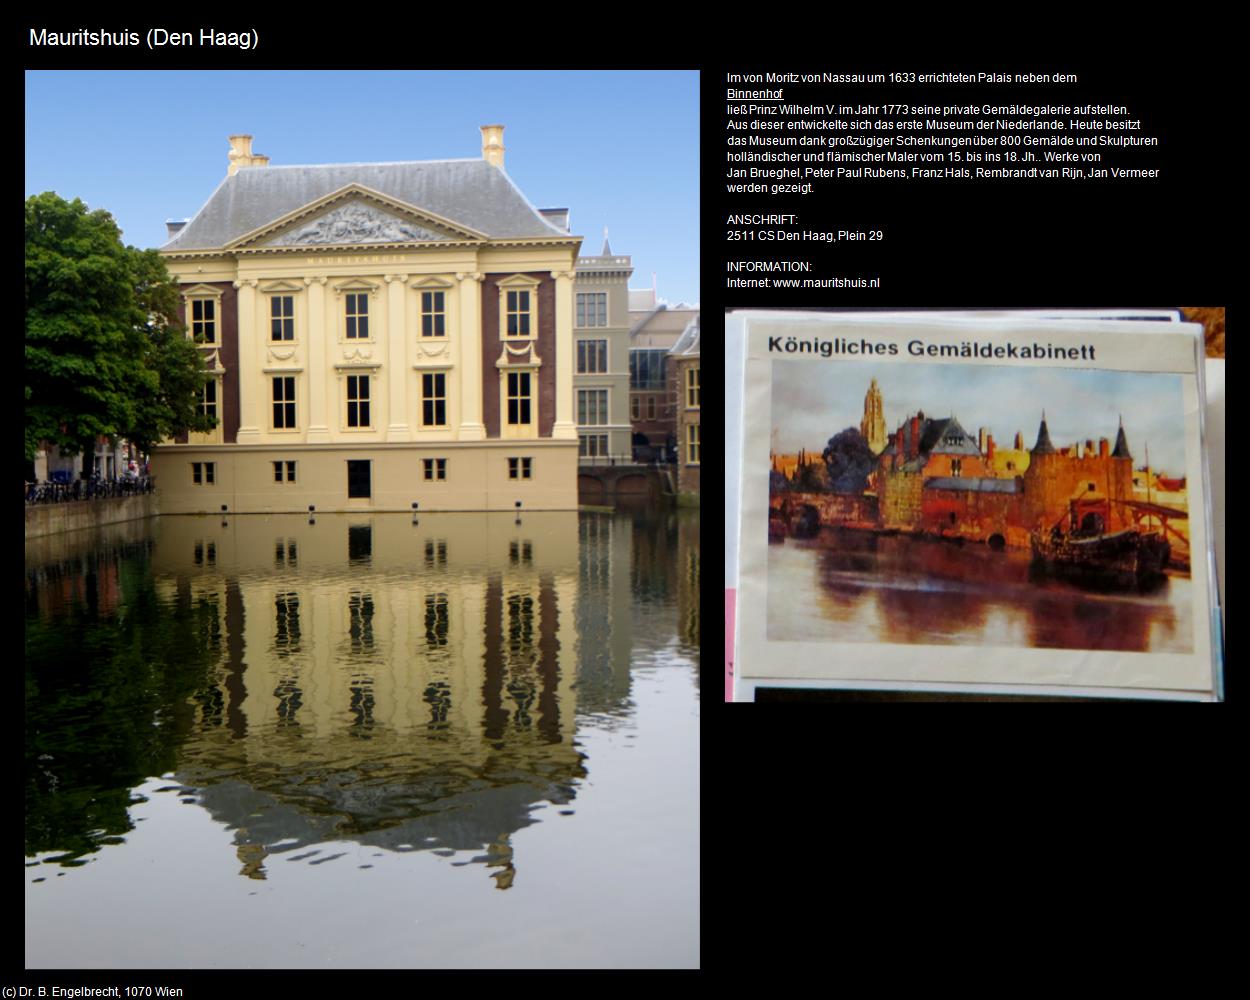 Mauritshuis (Den Haag) in Kulturatlas-NIEDERLANDE(c)B.Engelbrecht